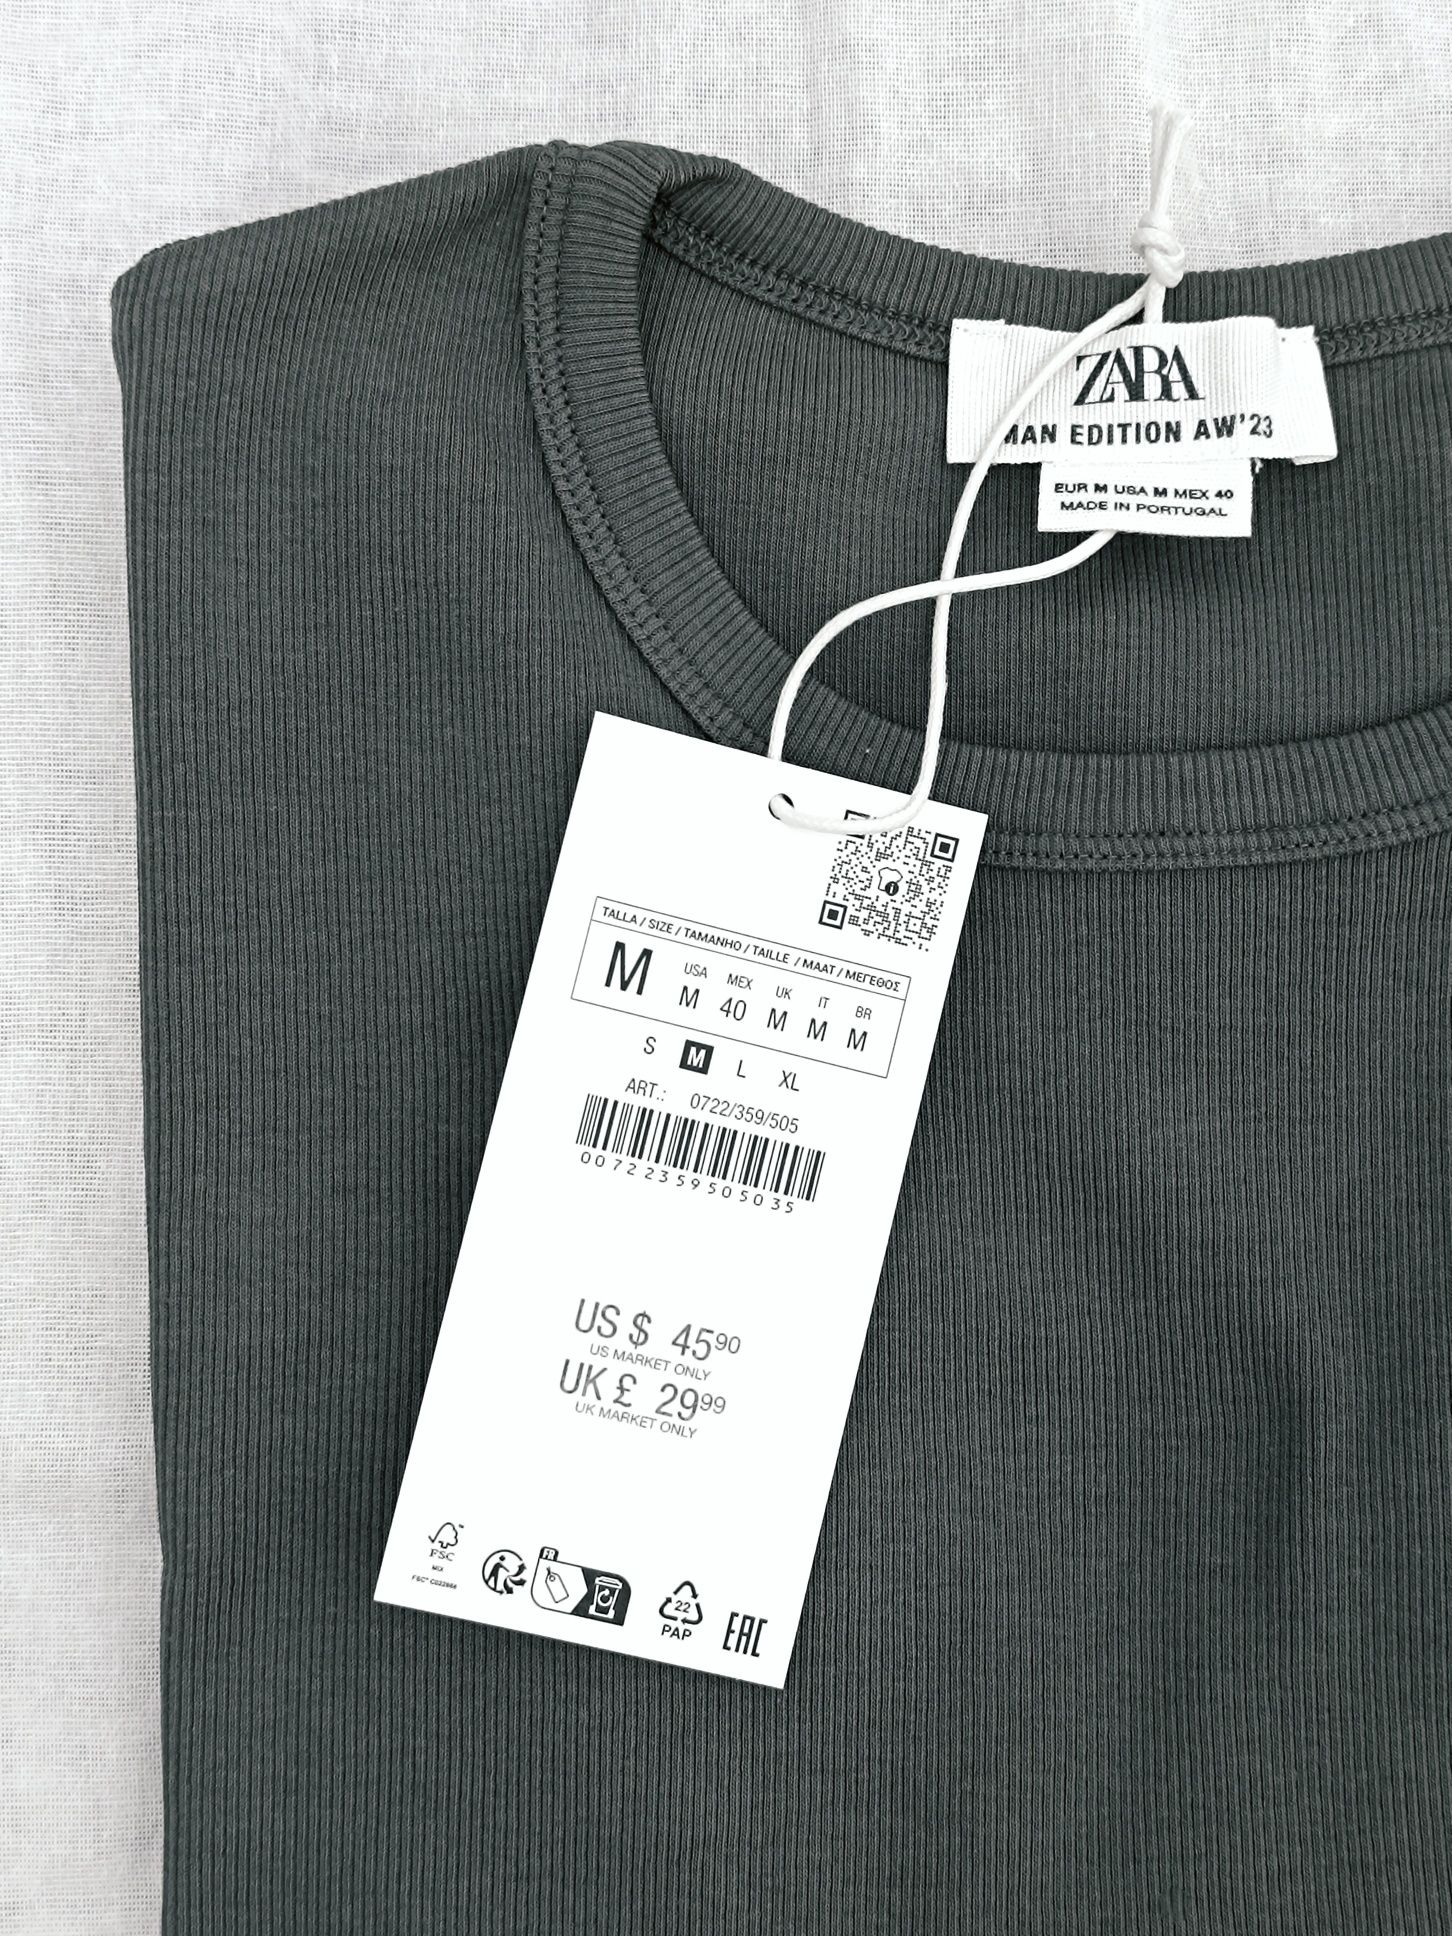 Bluzka męska z materiału w prążek z bawełny | Zara AW'23 M